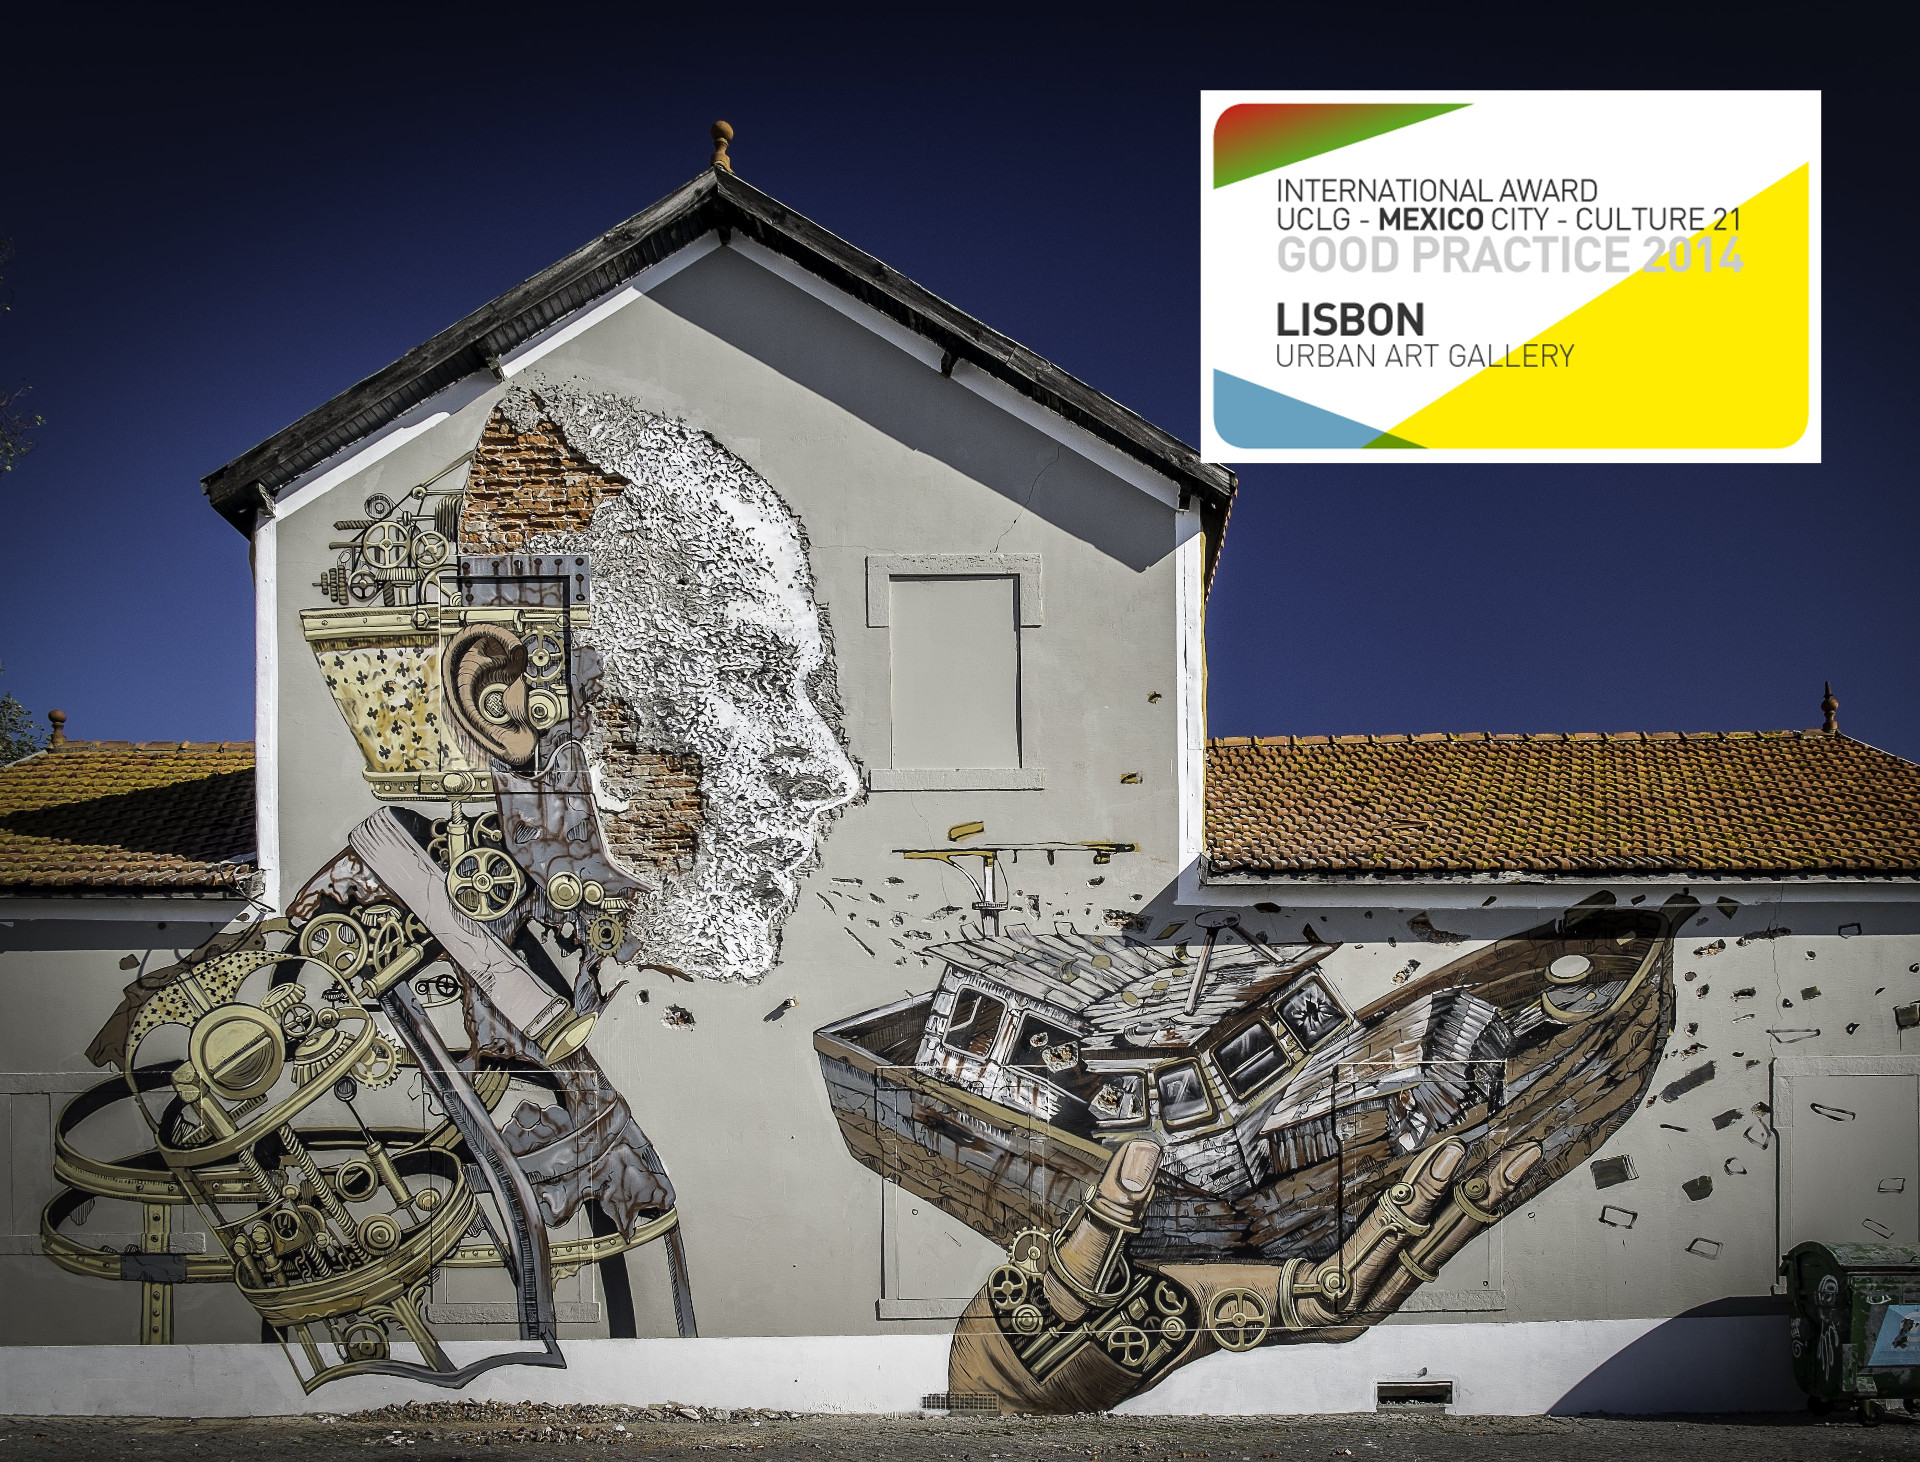 “Galería de Arte urbana” de Lisboa